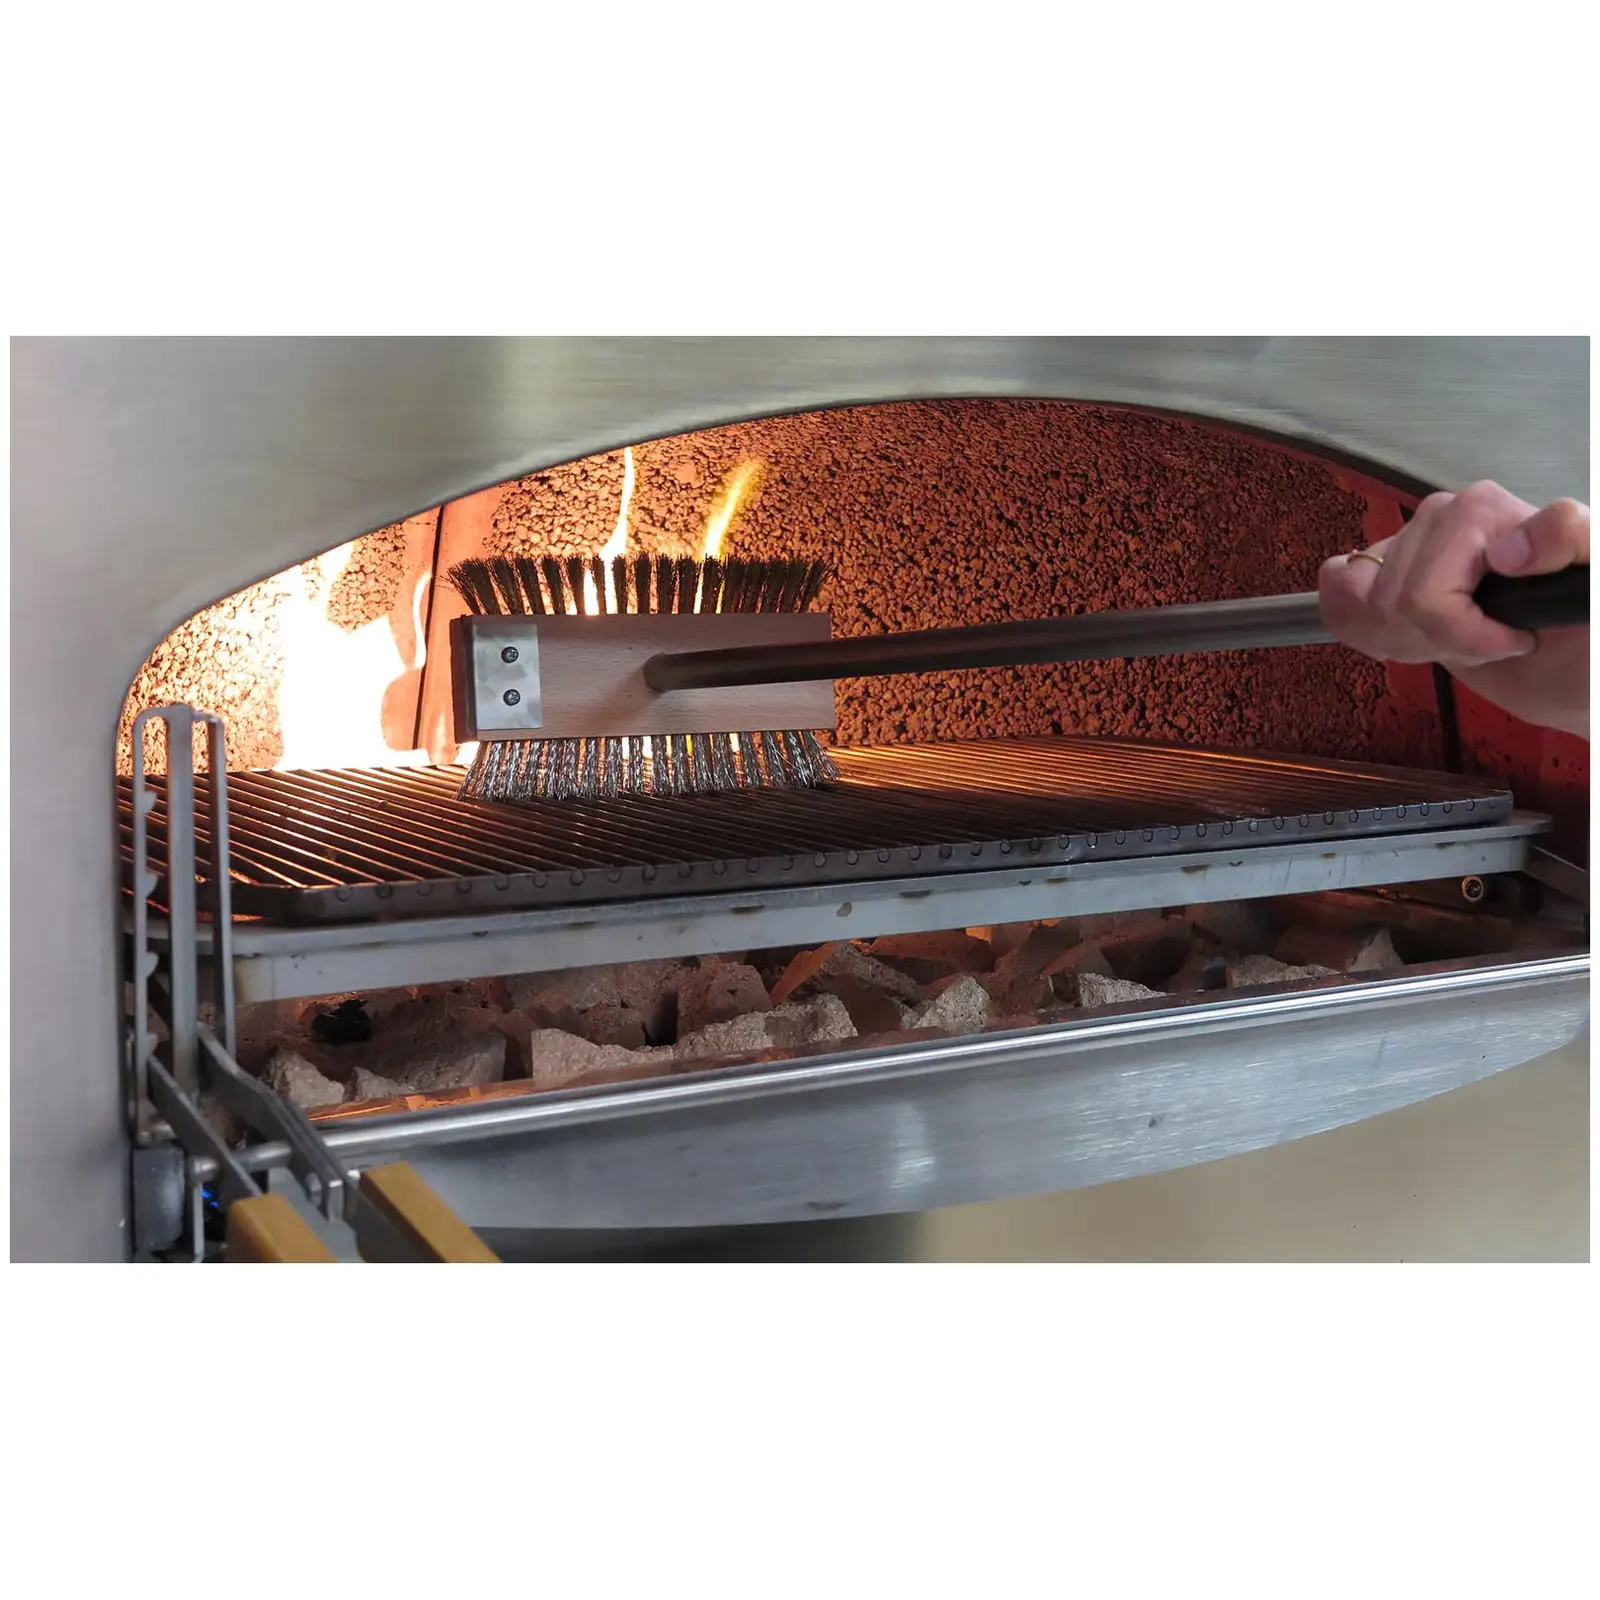 Cepillo para horno de pizza - Cabezal doble: 20 x 11,7 cm - Mango de acero inoxidable: 100 cm